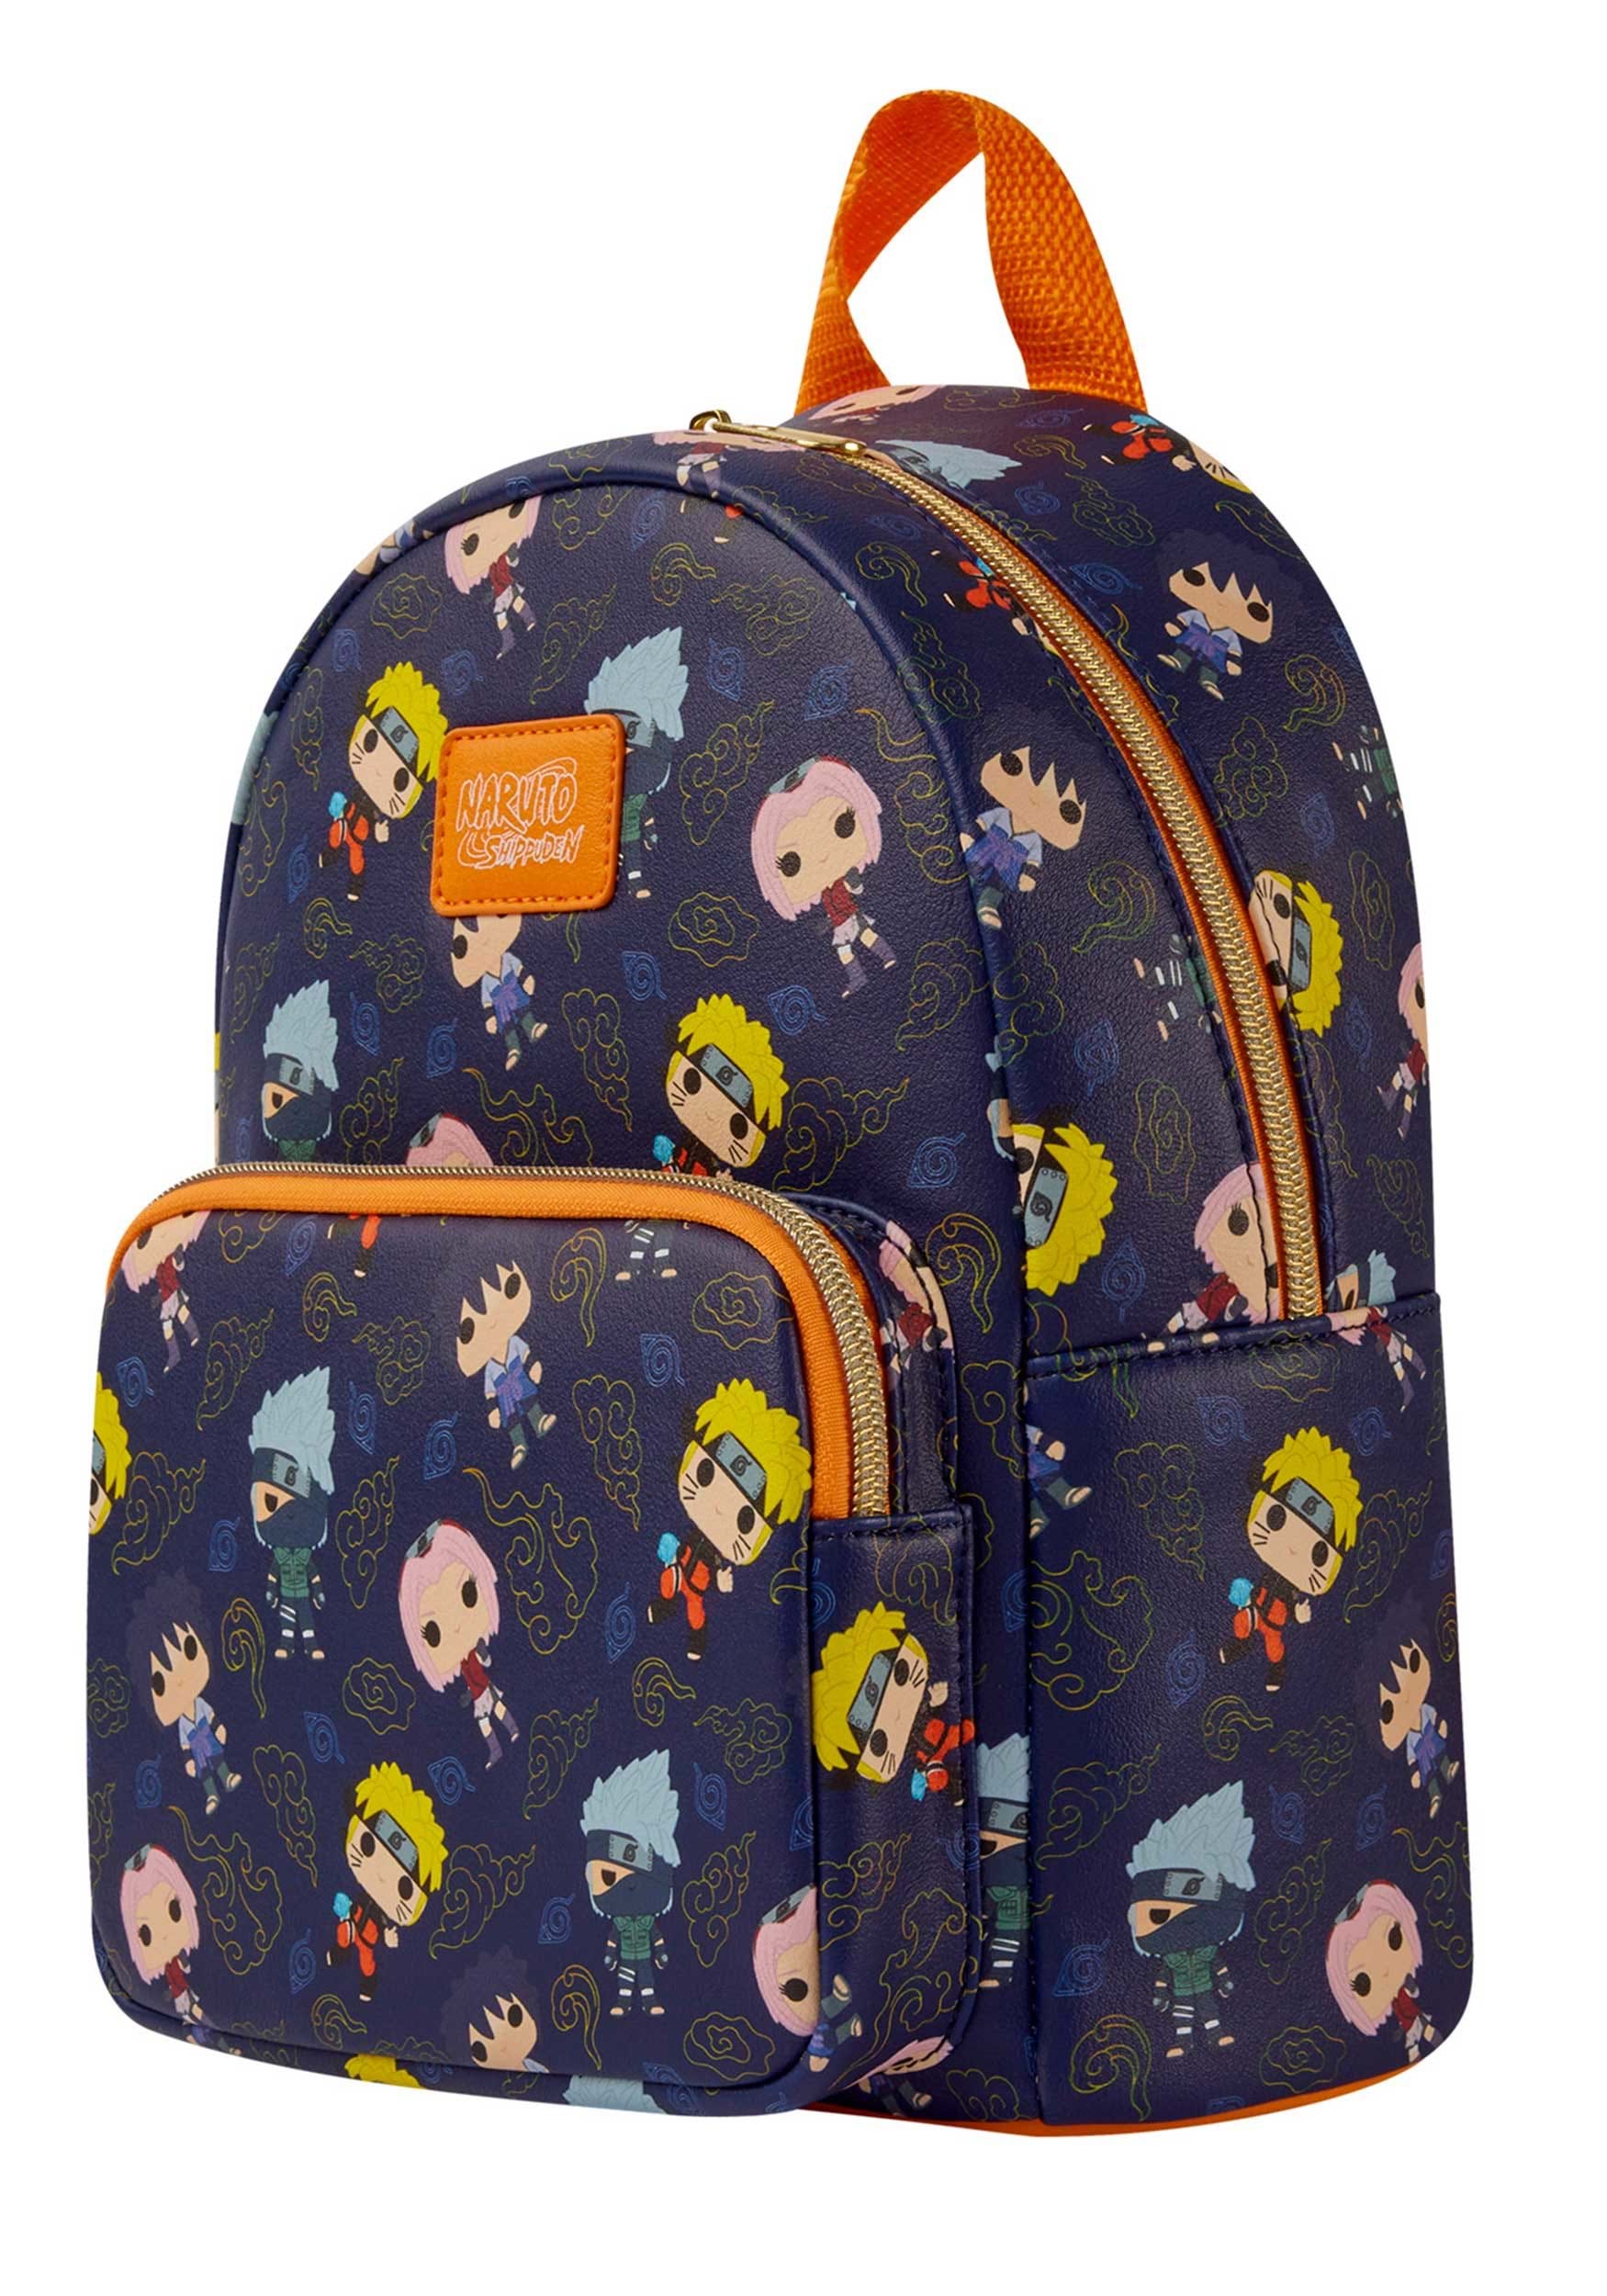 Naruto Funko Pop! Group Mini Backpack